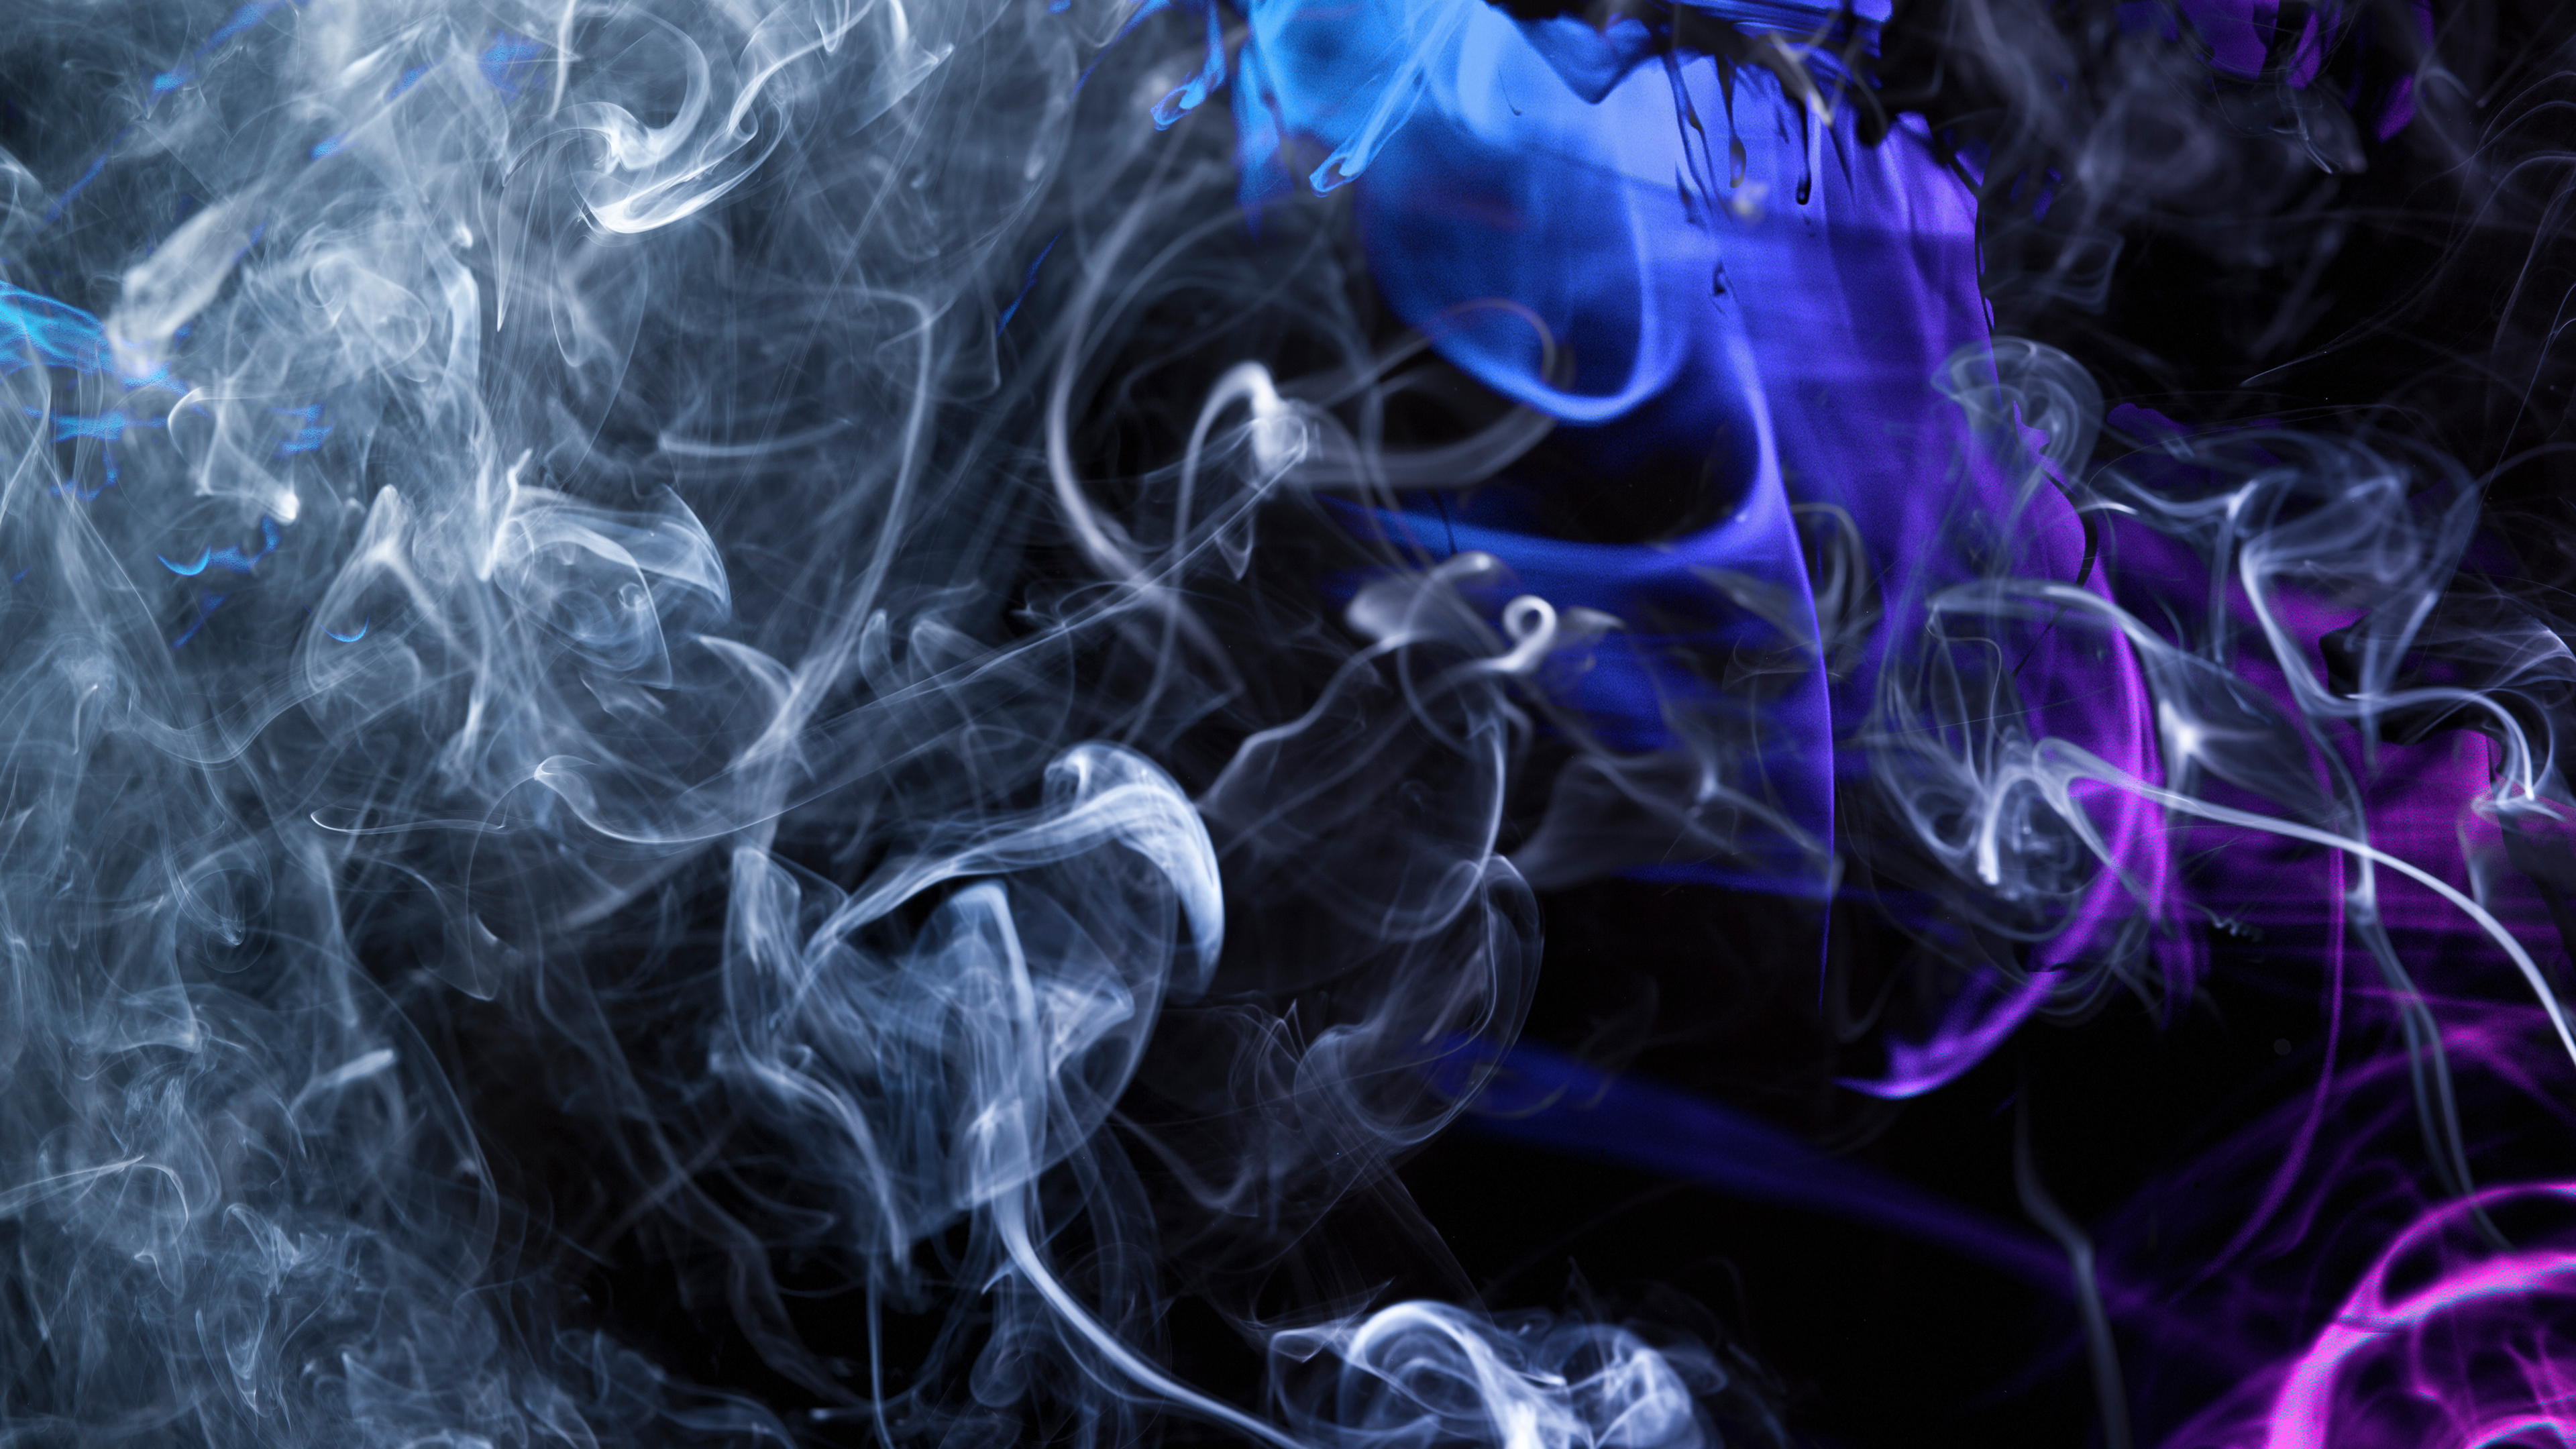 smoke wallpaper,smoke,blue,purple,violet,electric blue